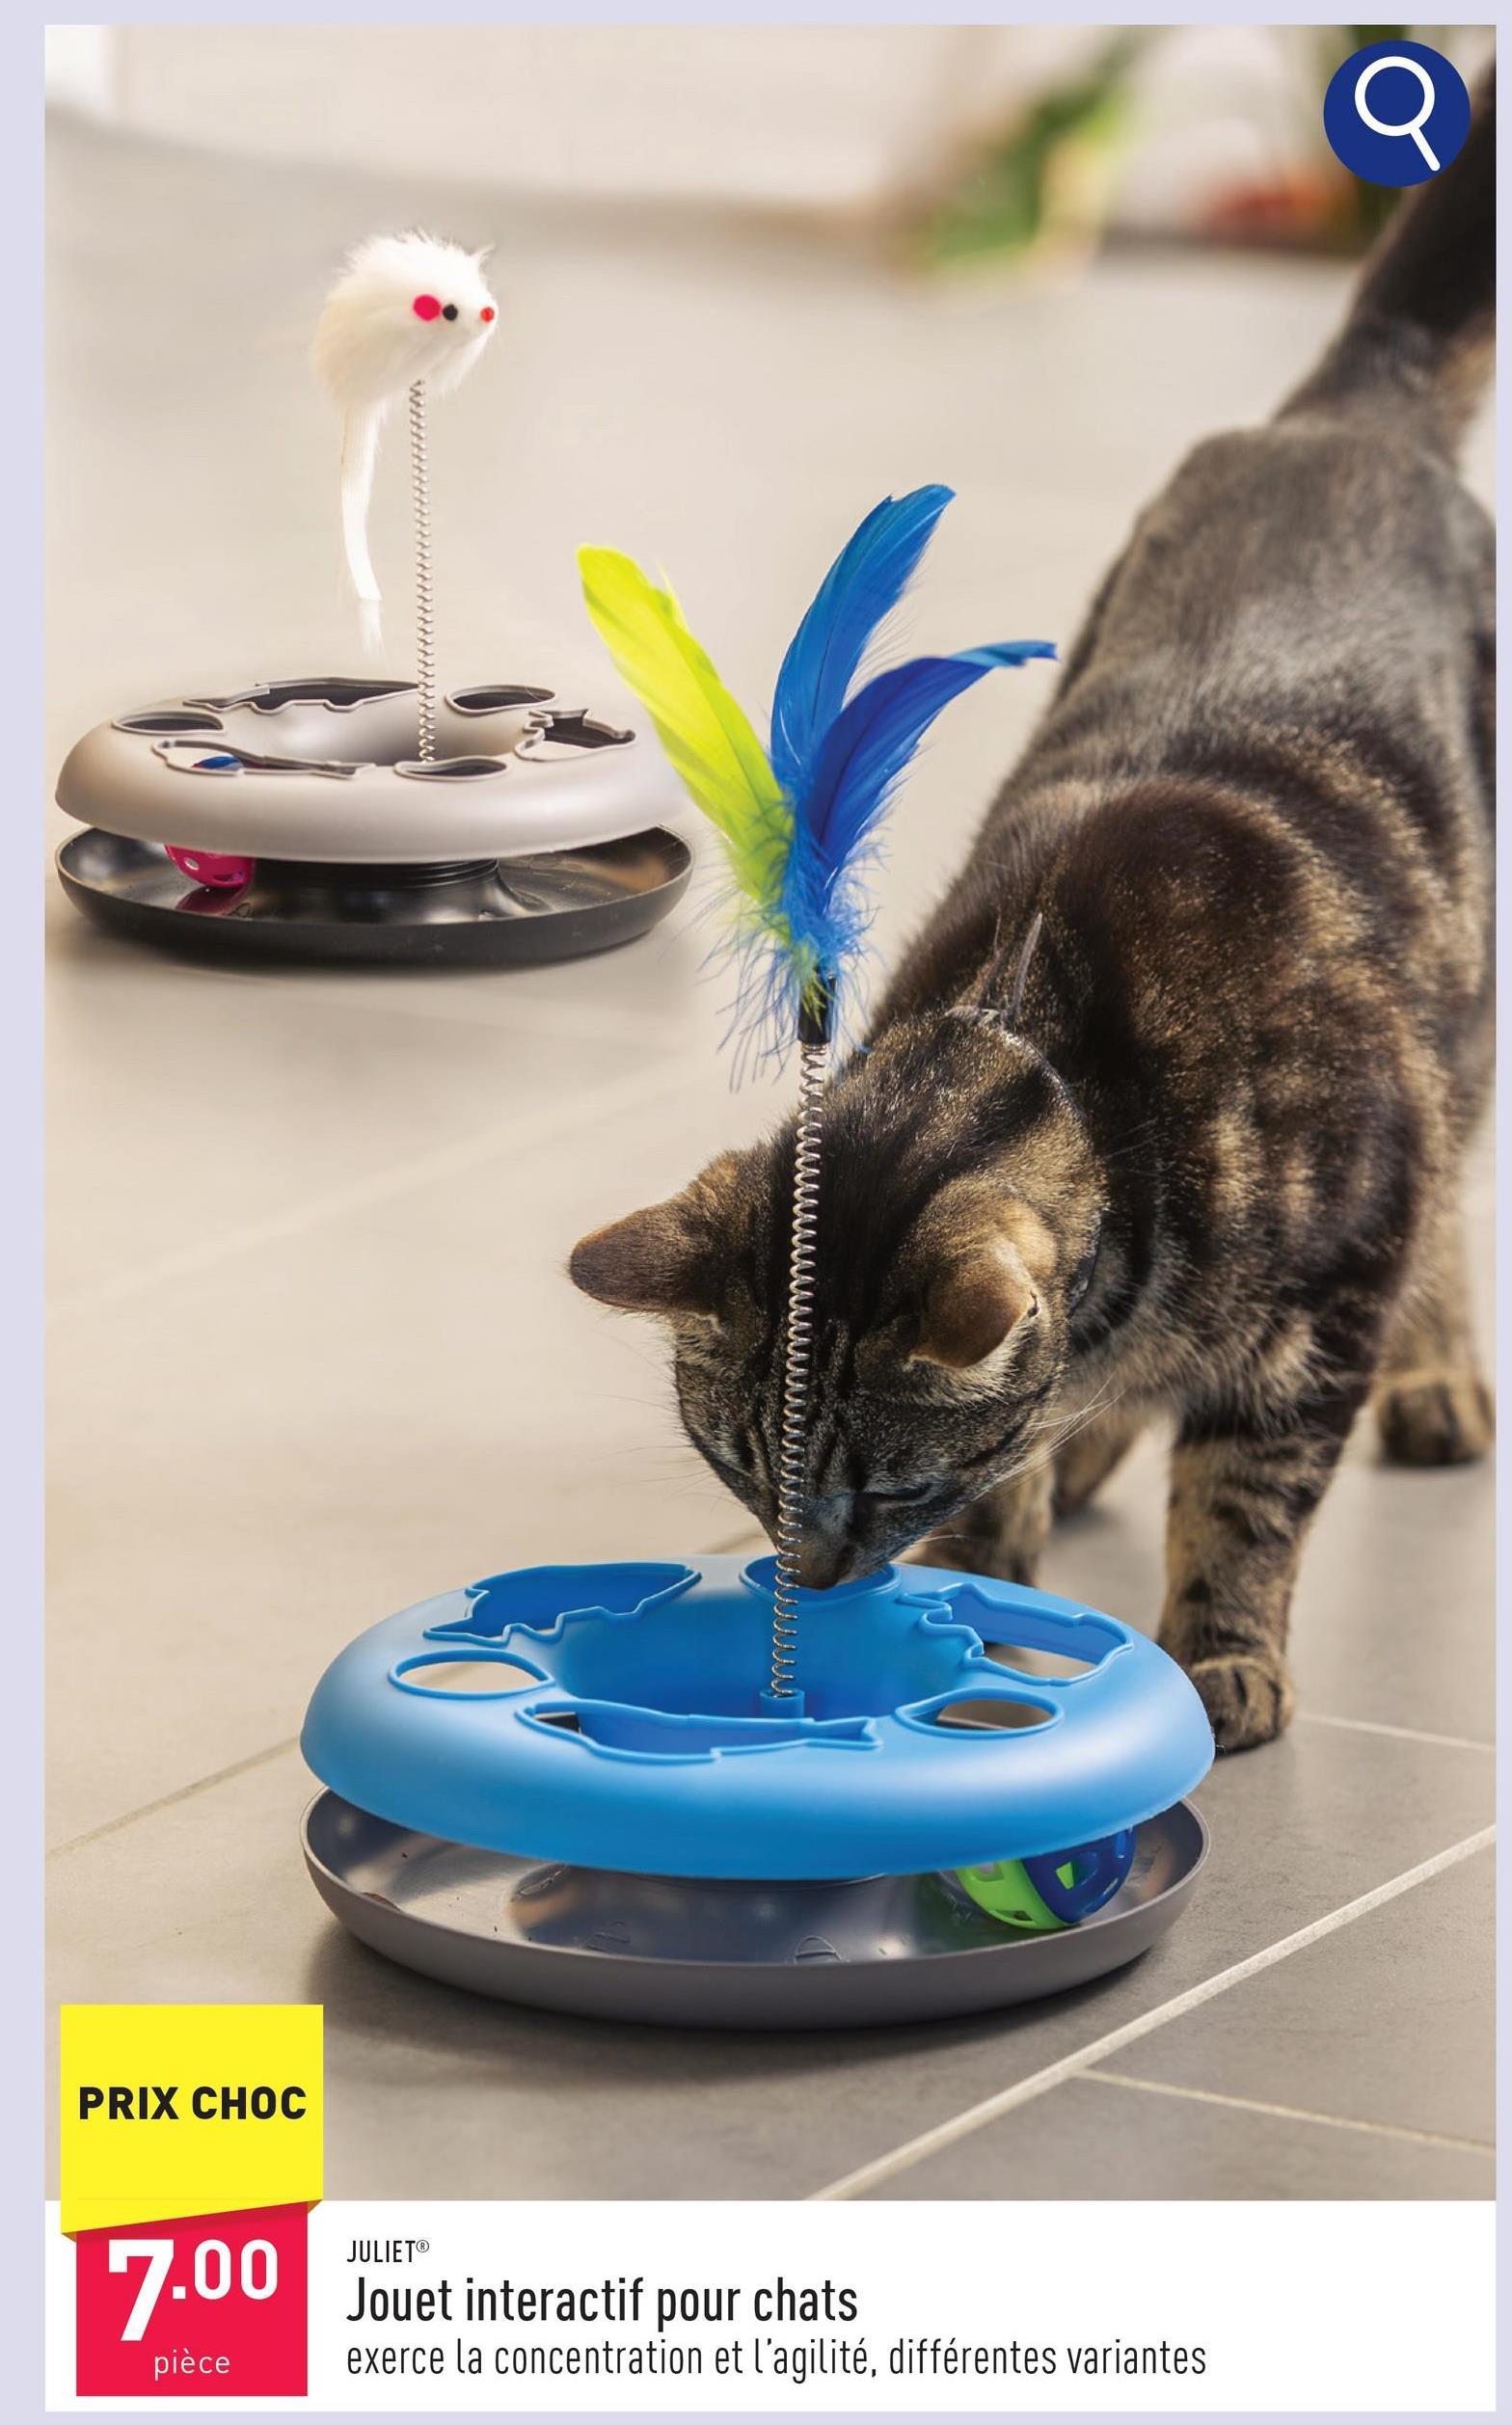 Jouet interactif pour chats exerce la concentration et l’agilité, stimule l’envie de jouer, choix entre différentes variantes